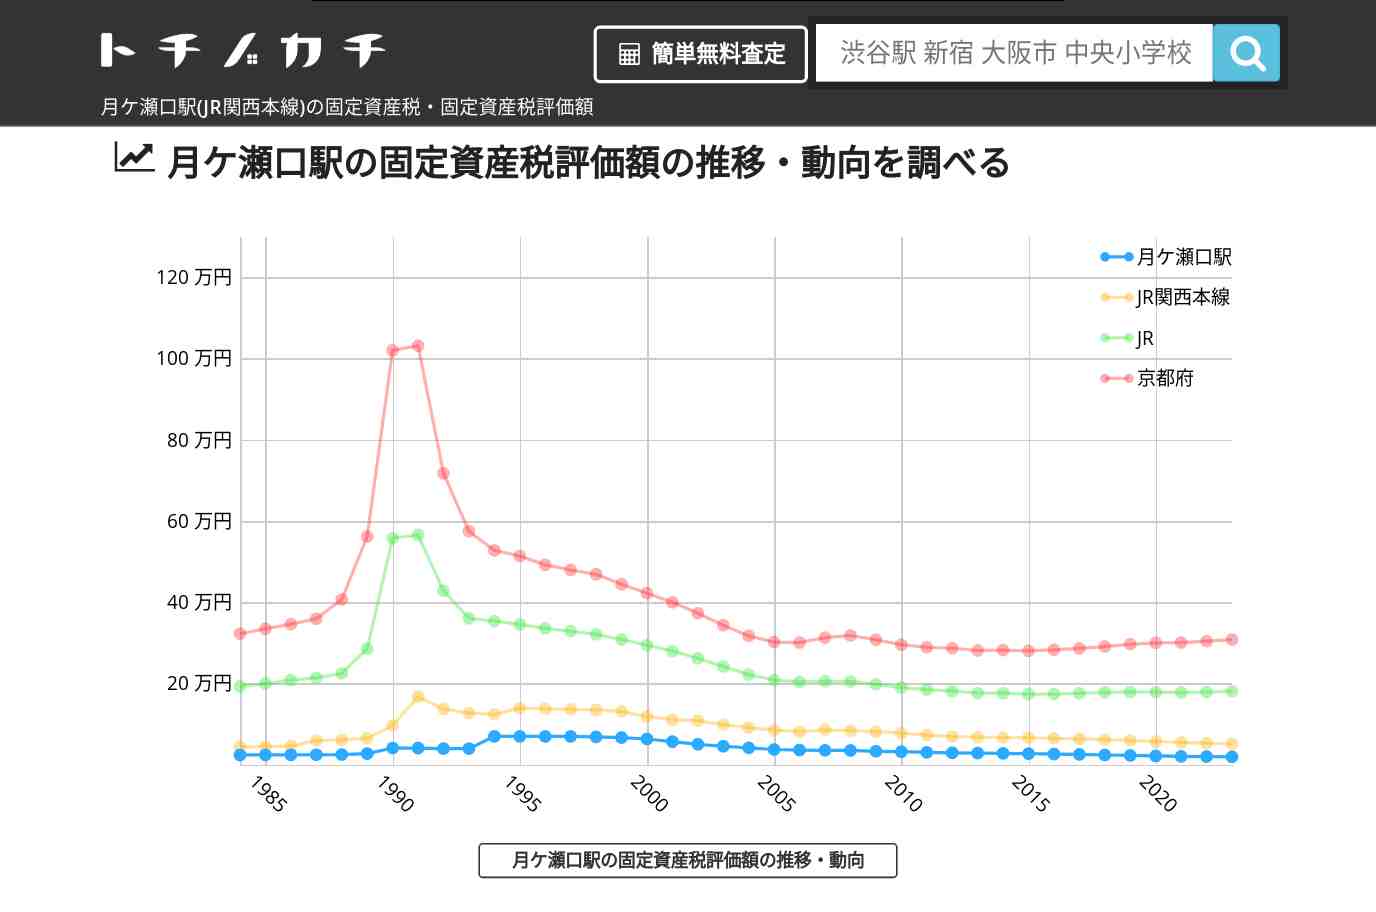 月ケ瀬口駅(JR関西本線)の固定資産税・固定資産税評価額 | トチノカチ